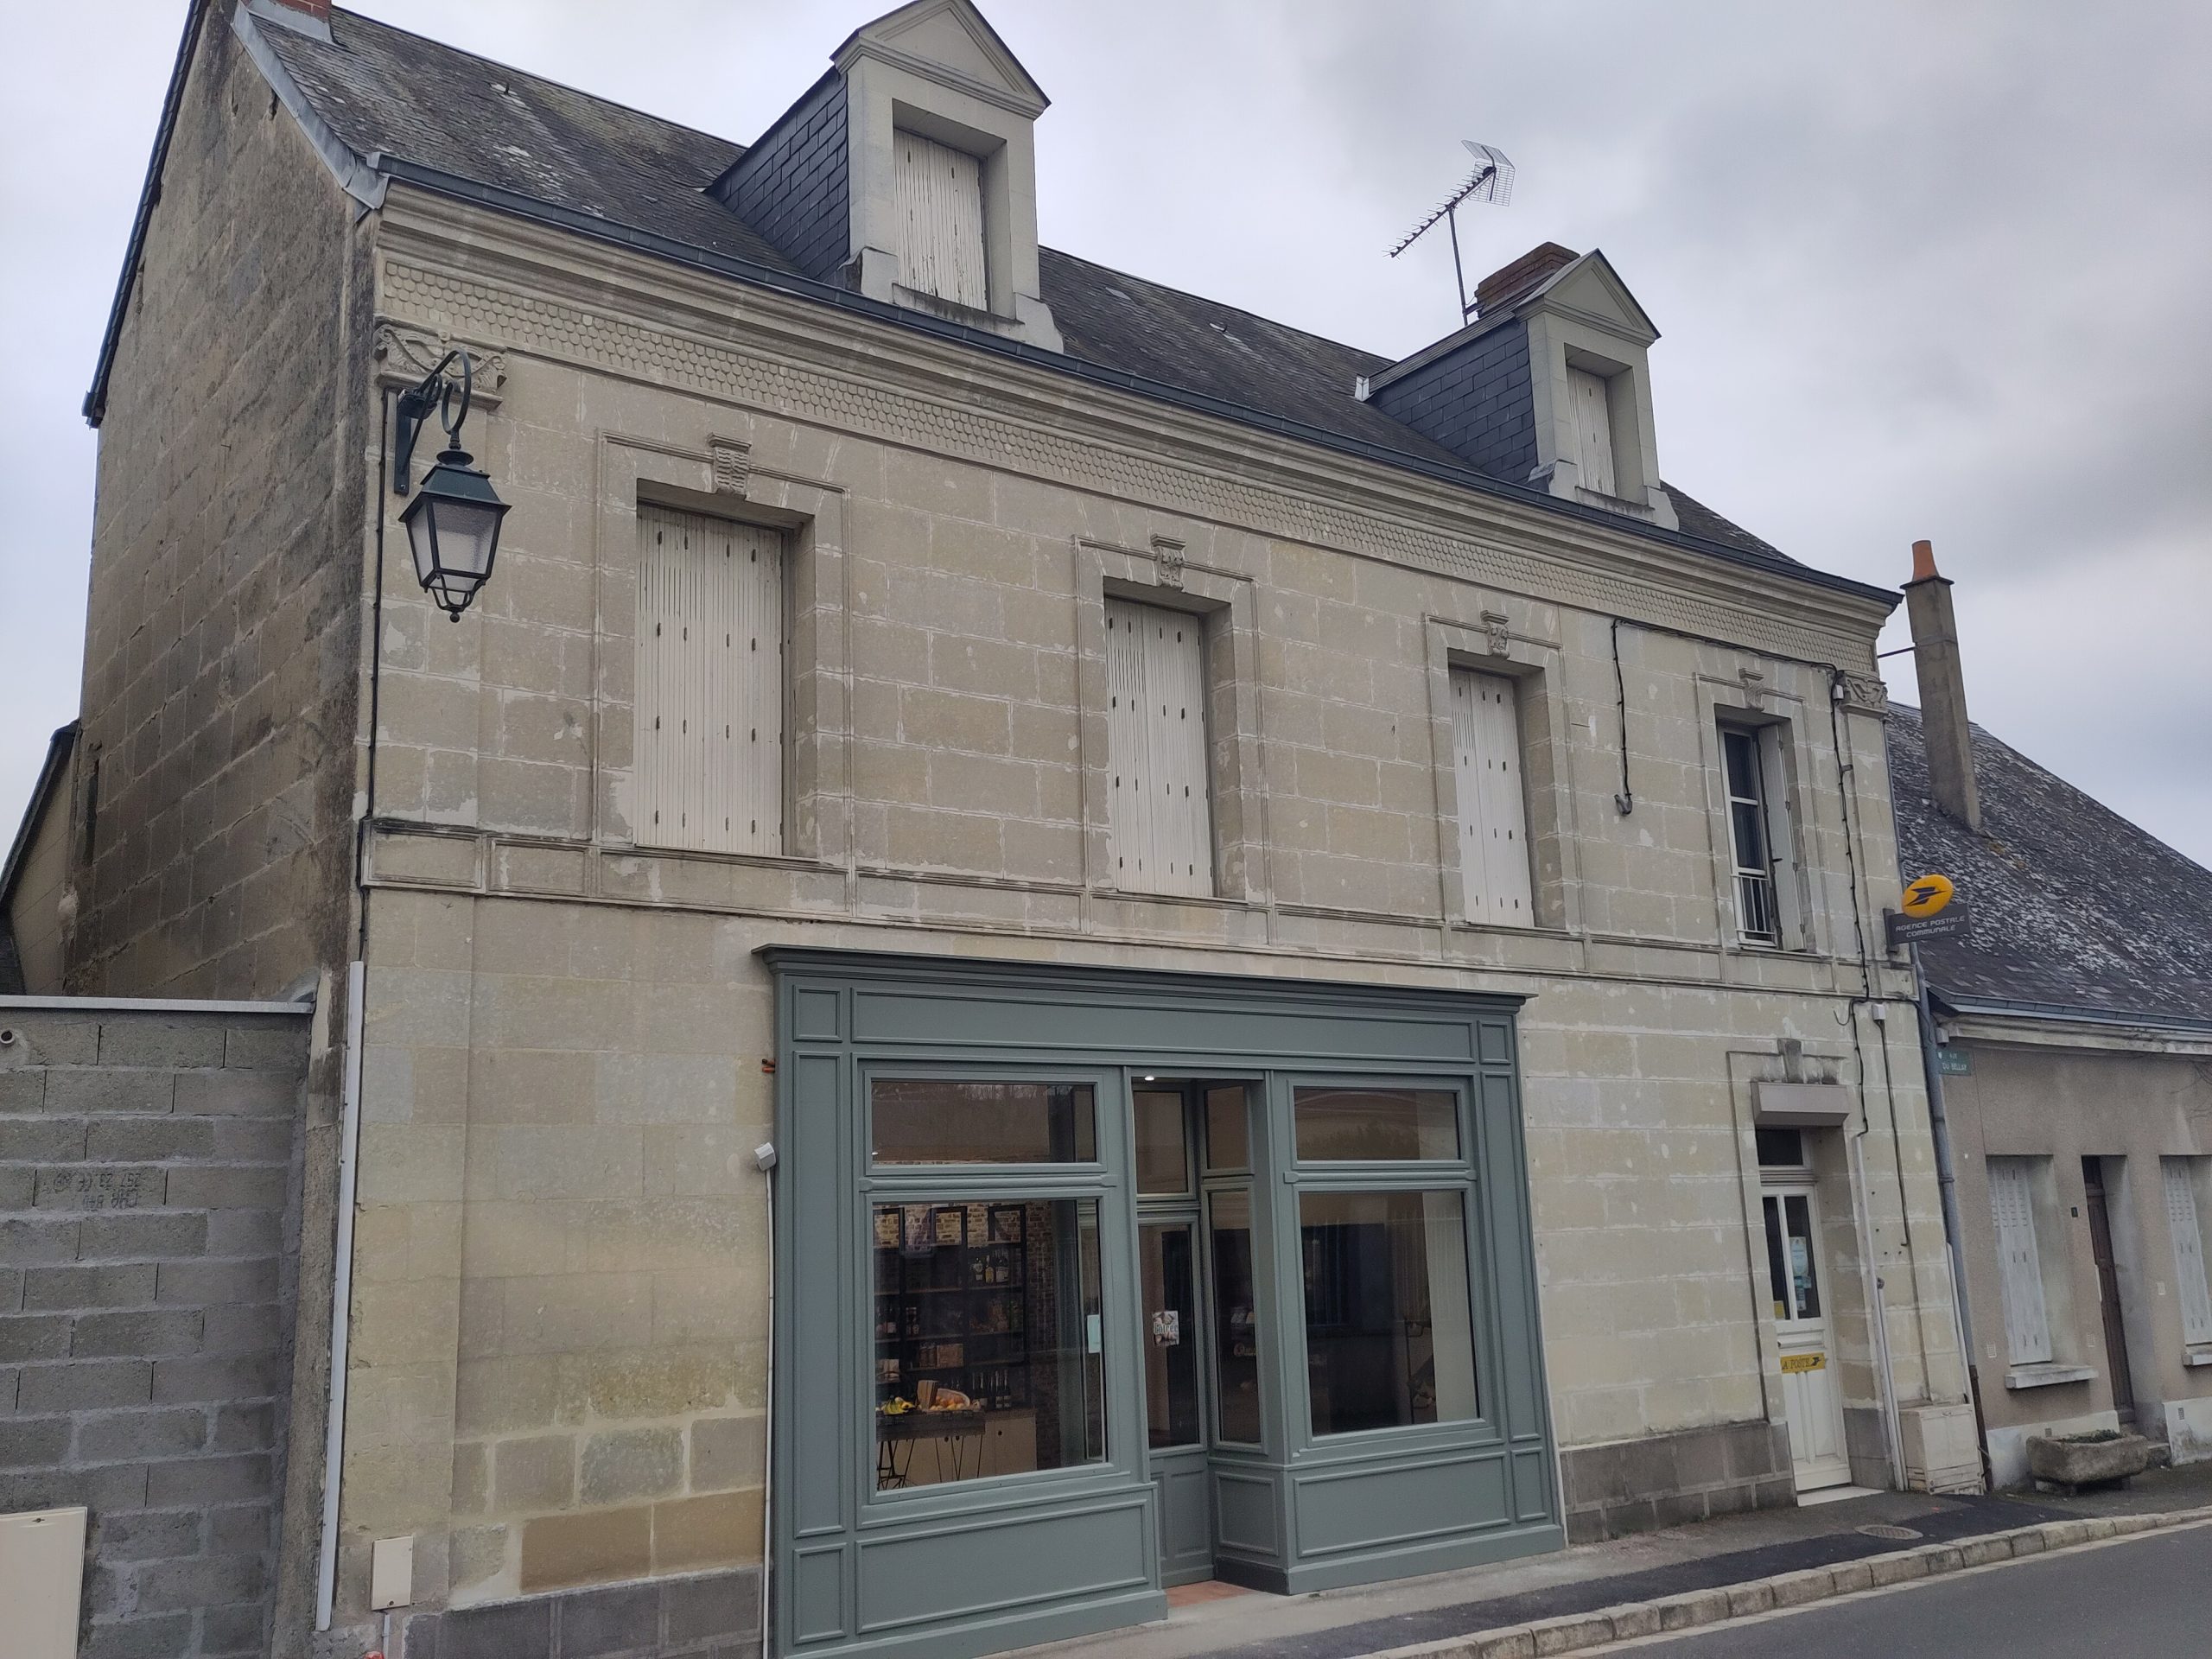 Réaménagement de la boulangerie de Couture sur Loir en commerce multiservice 